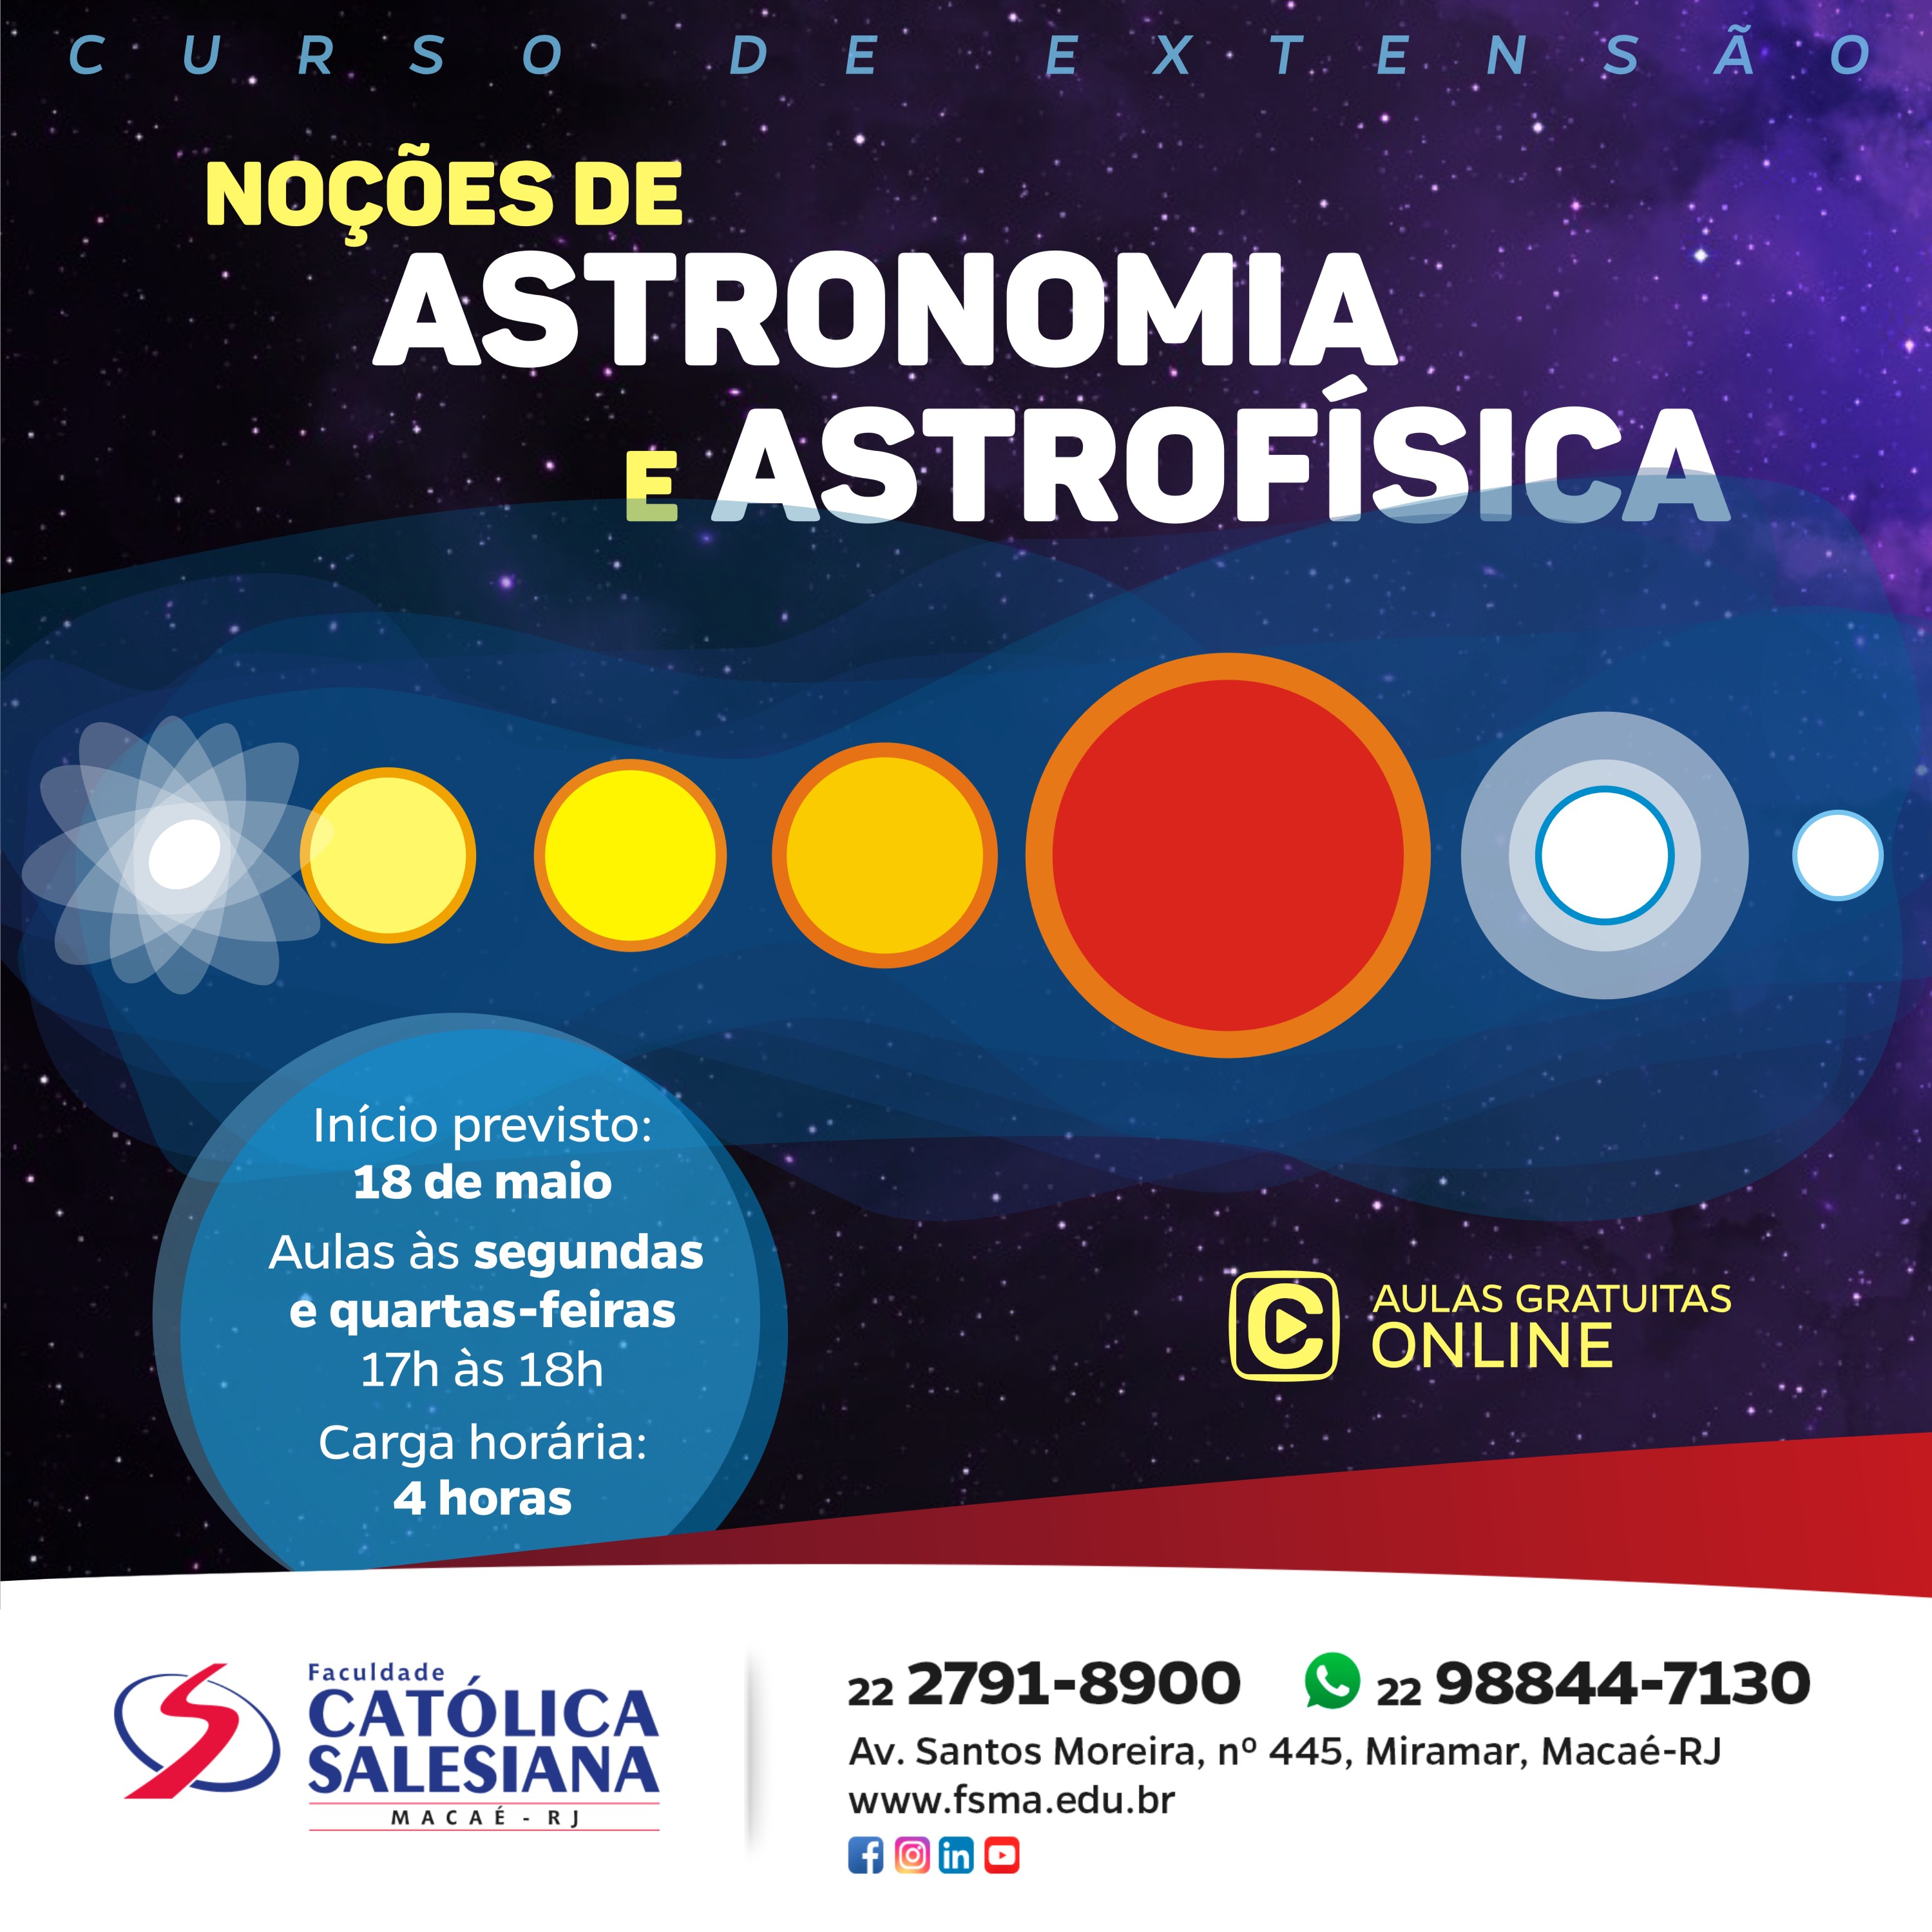 Salesiana Online lança Curso de Extensão gratuito na área de Astronomia e Astrofísica